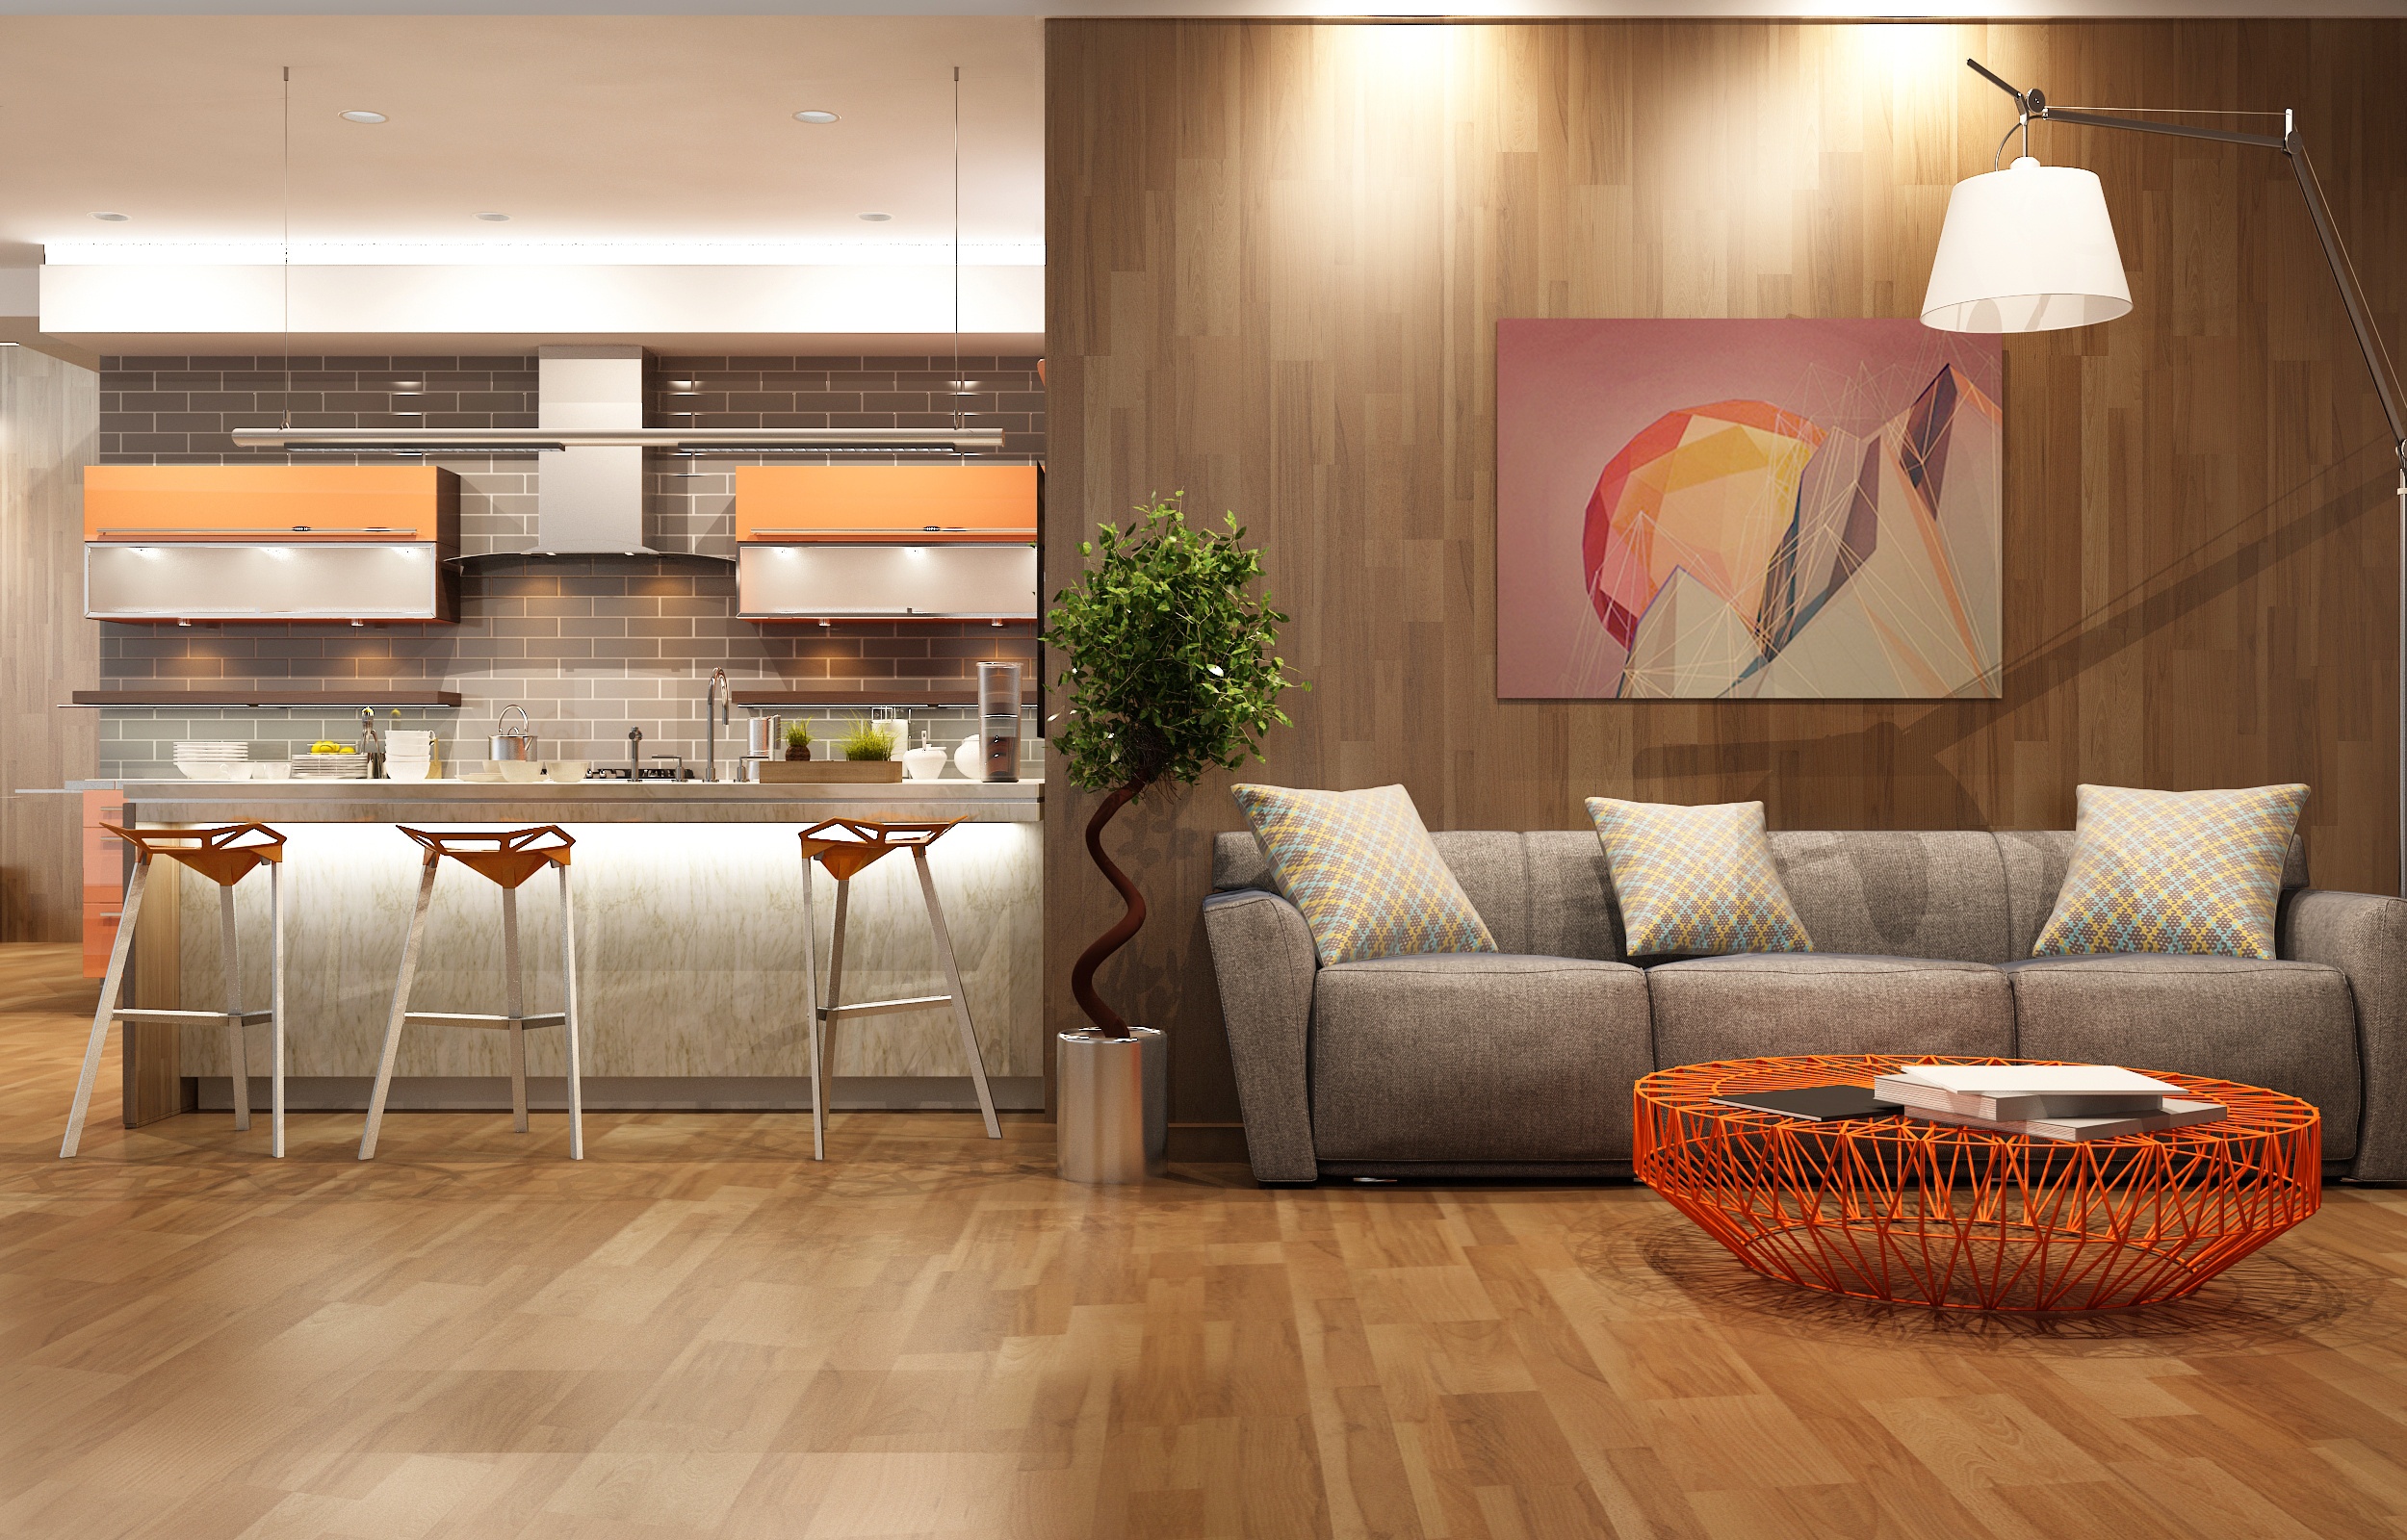 Download mobile wallpaper Design, Room, Furniture, Living Room, Kitchen, Man Made for free.